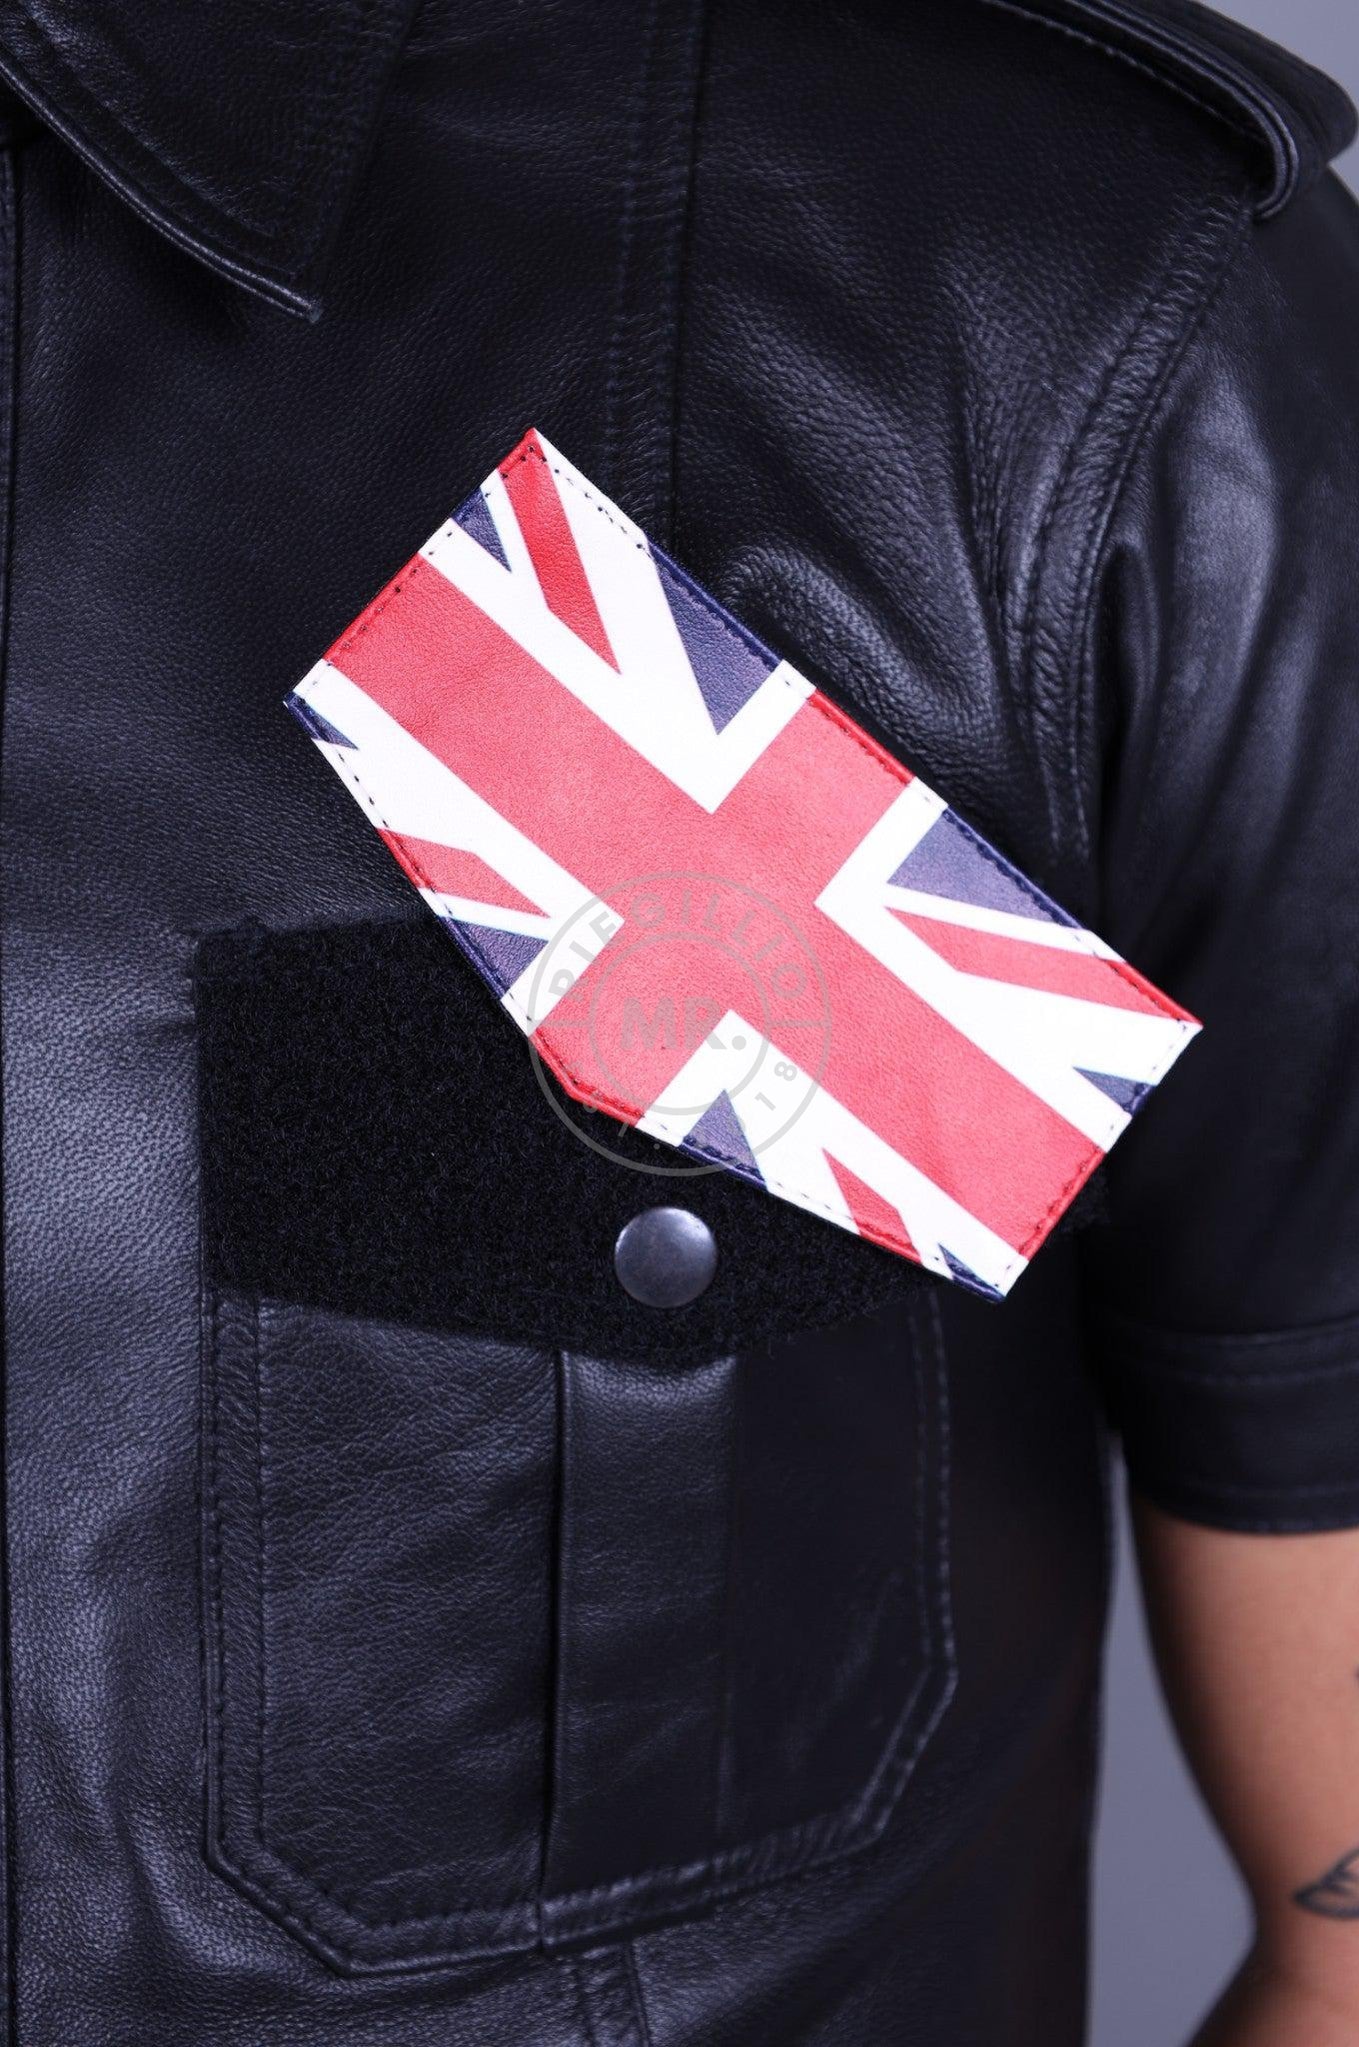 Velcro Patch - UK Flag-at MR. Riegillio